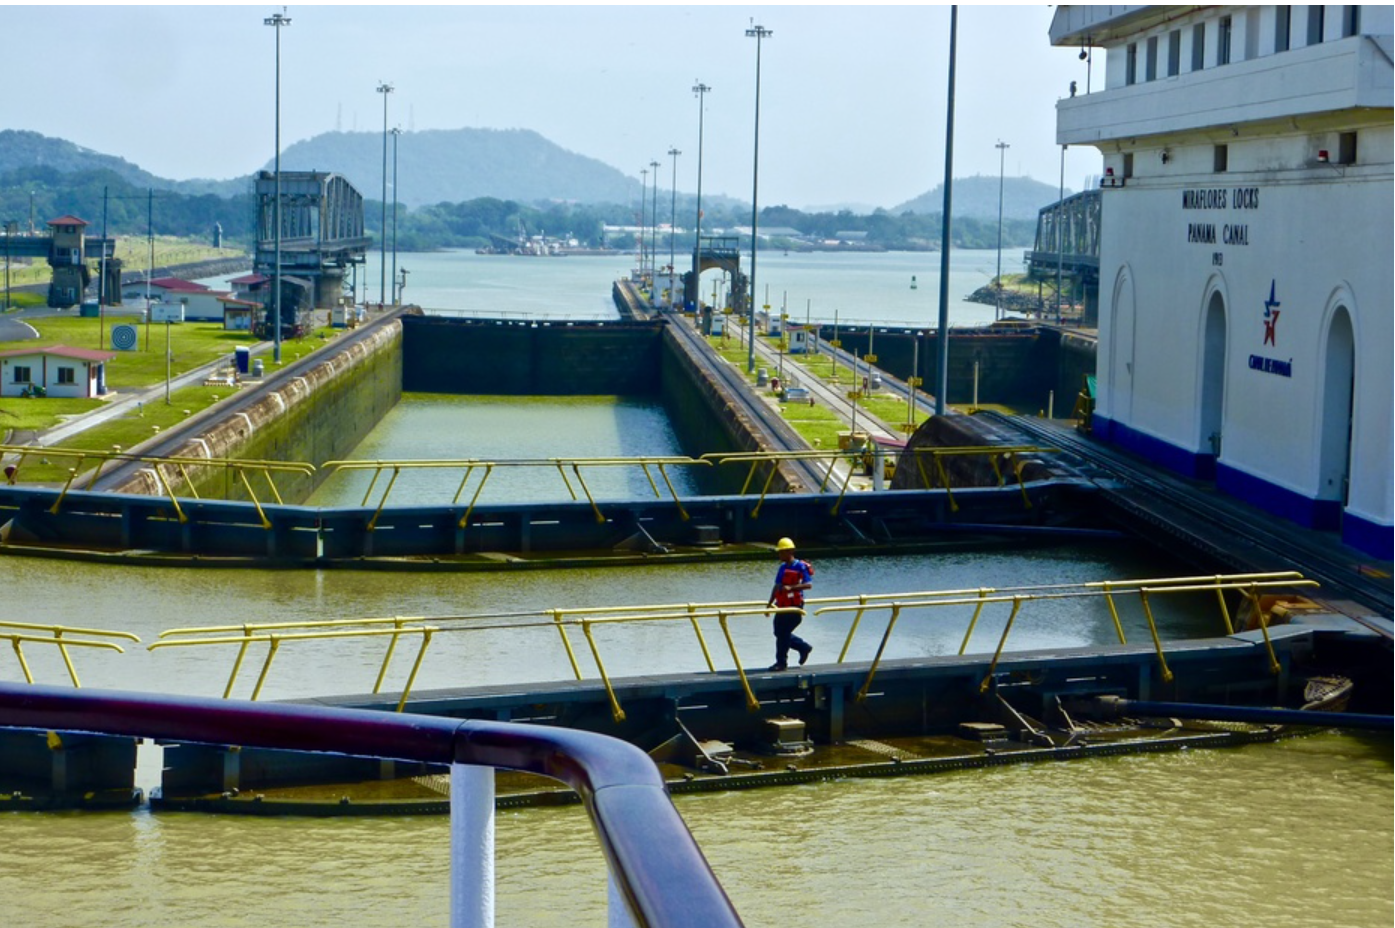 巴拿马运河再次堵船严重,有其他办法解决这个问题吗?